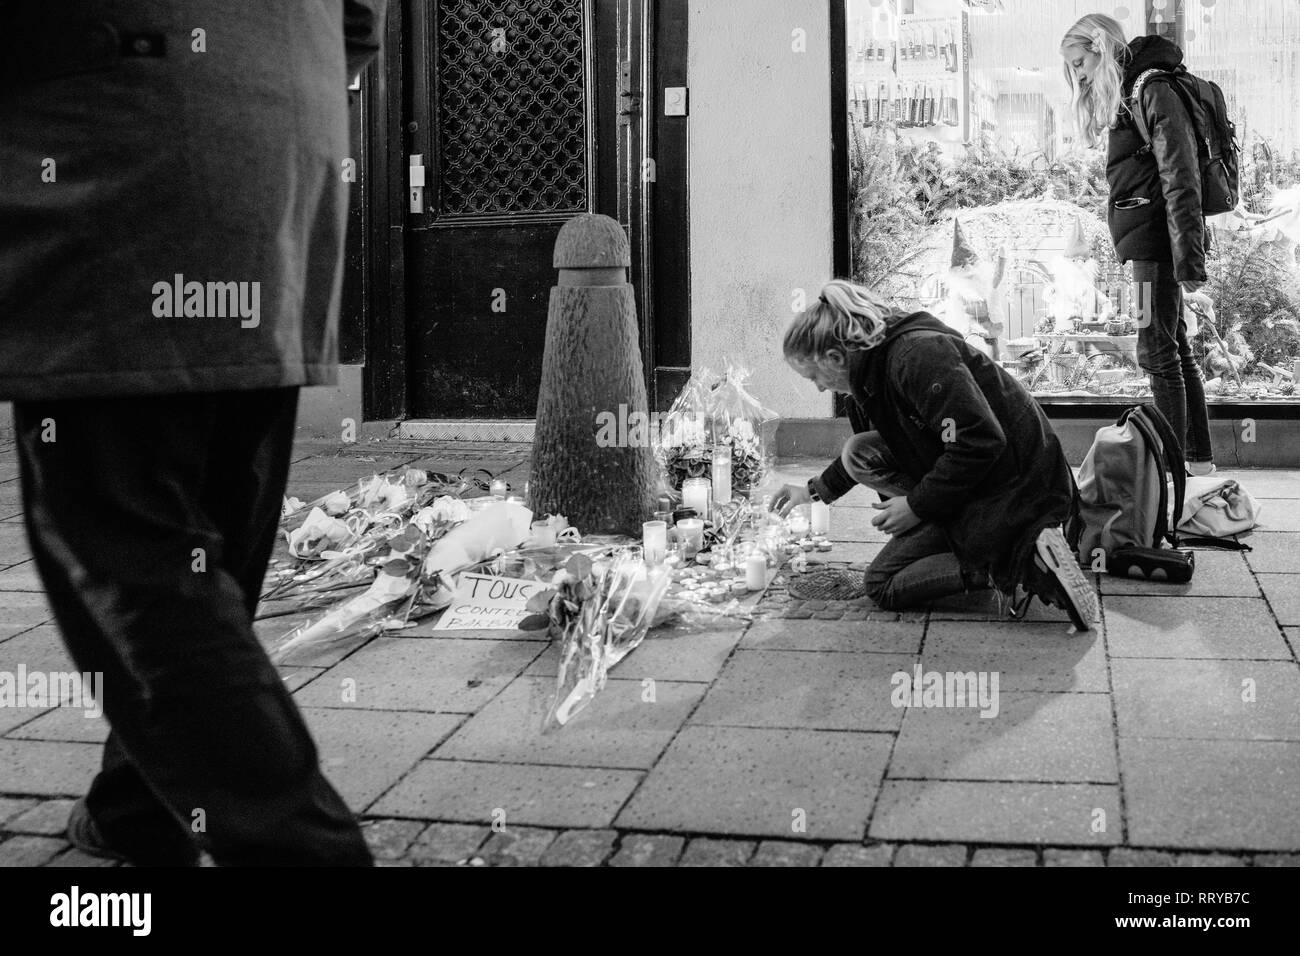 Strasburgo, Francia - Dic 13, 2018: giovani ragazze accendendo candele su Rue des Orfevres a partecipare a una veglia con più luce di candele fiori e messaggi per le vittime degli attentati Cherif Chekatt al mercatino di Natale Foto Stock